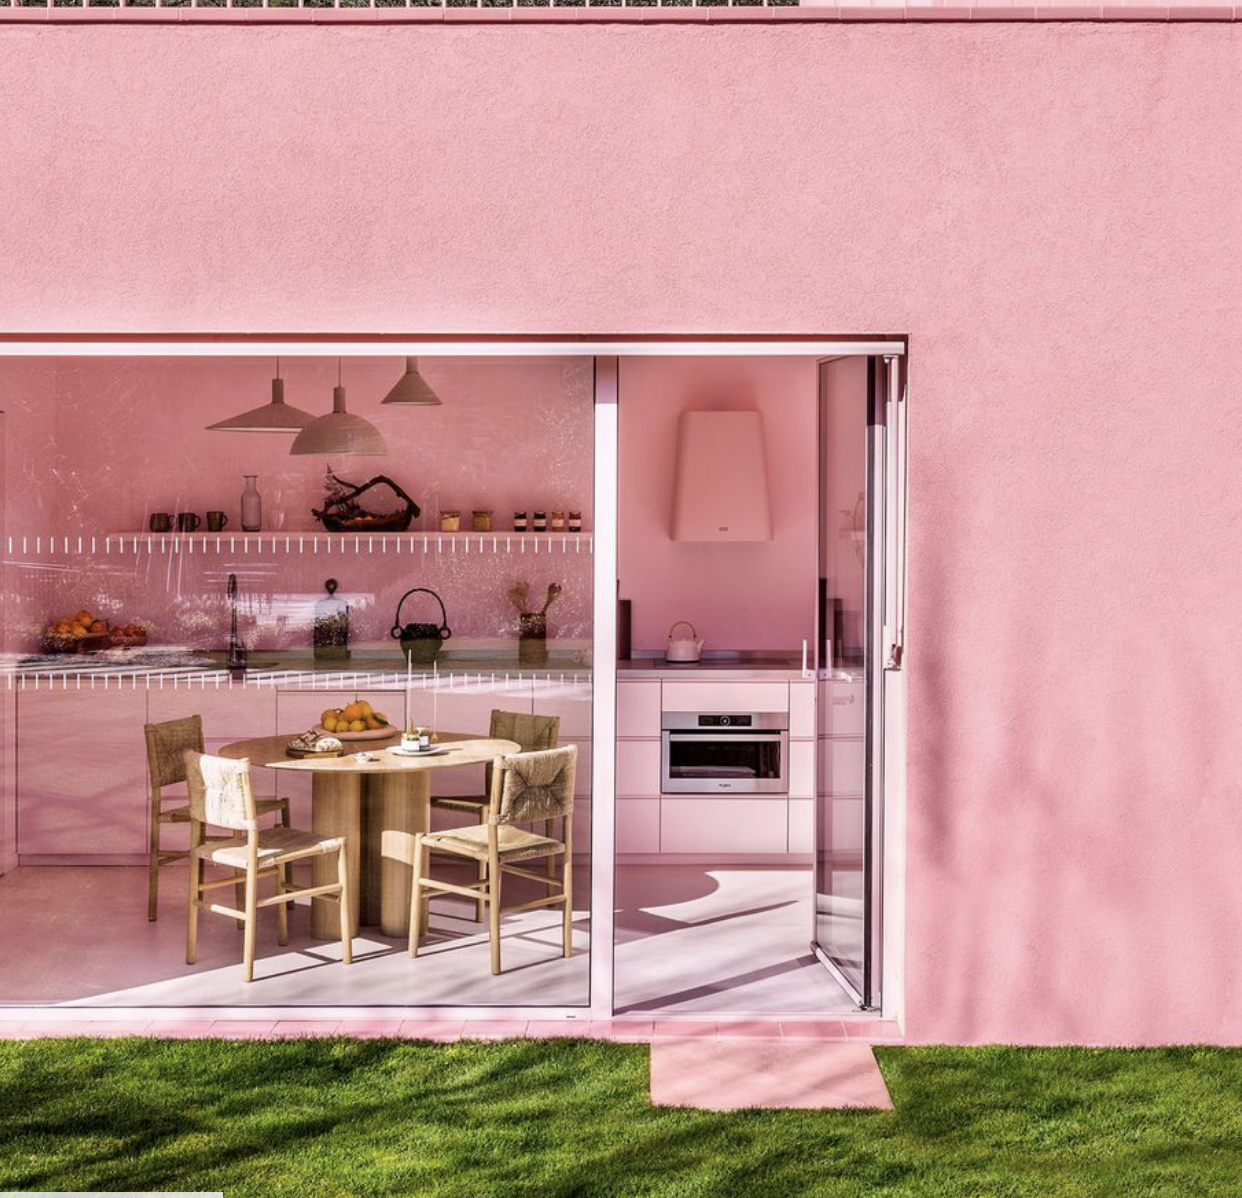 Σ' αυτό το ροζ σπίτι στη Γαλλία, θα μπορούσε να μένει η Barbie